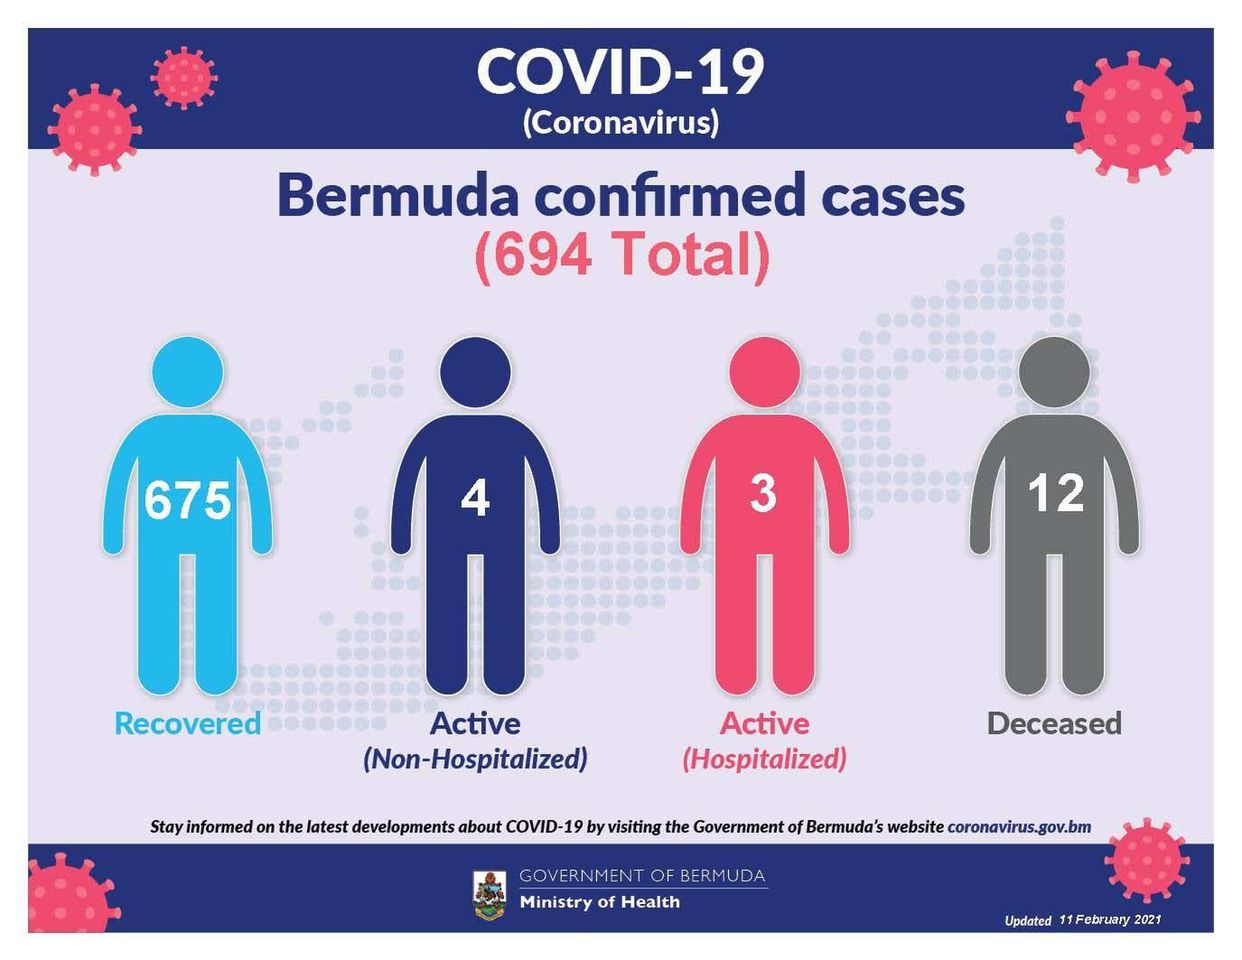 No new COVID-19 cases reported in Bermuda, 11 February